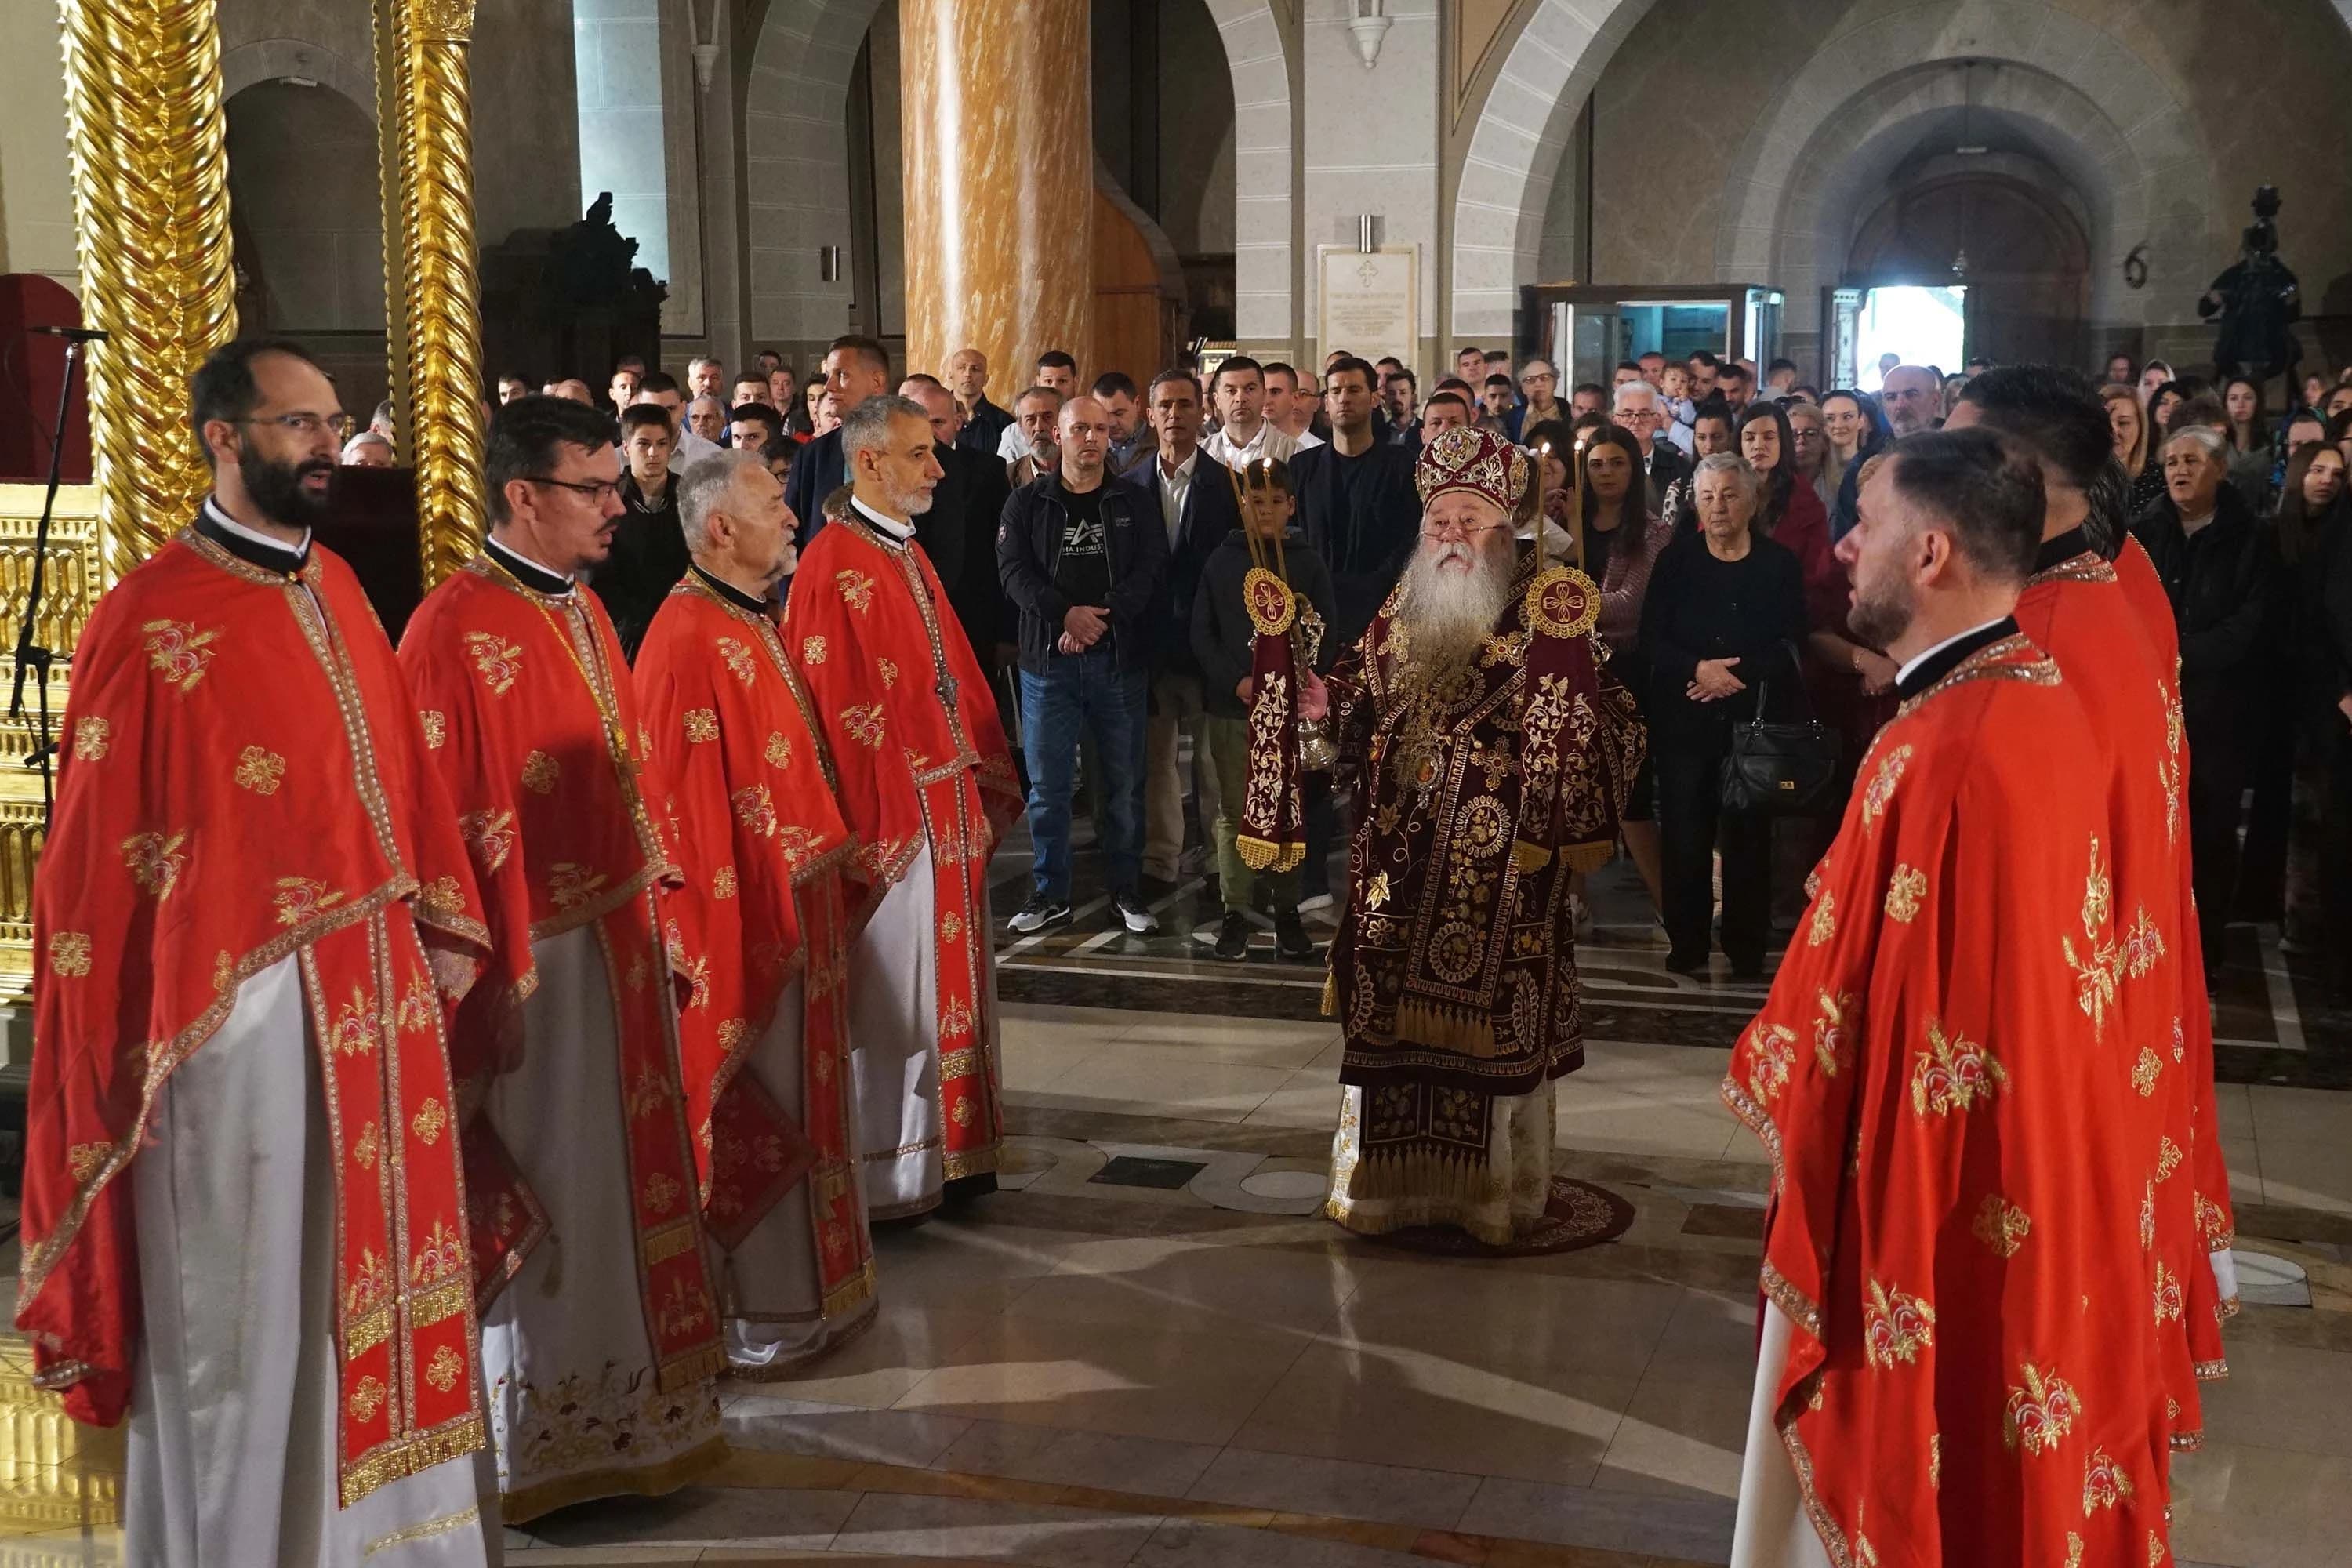 Pravoslavni vjernici širom svijeta danas proslavljaju Vaskrs